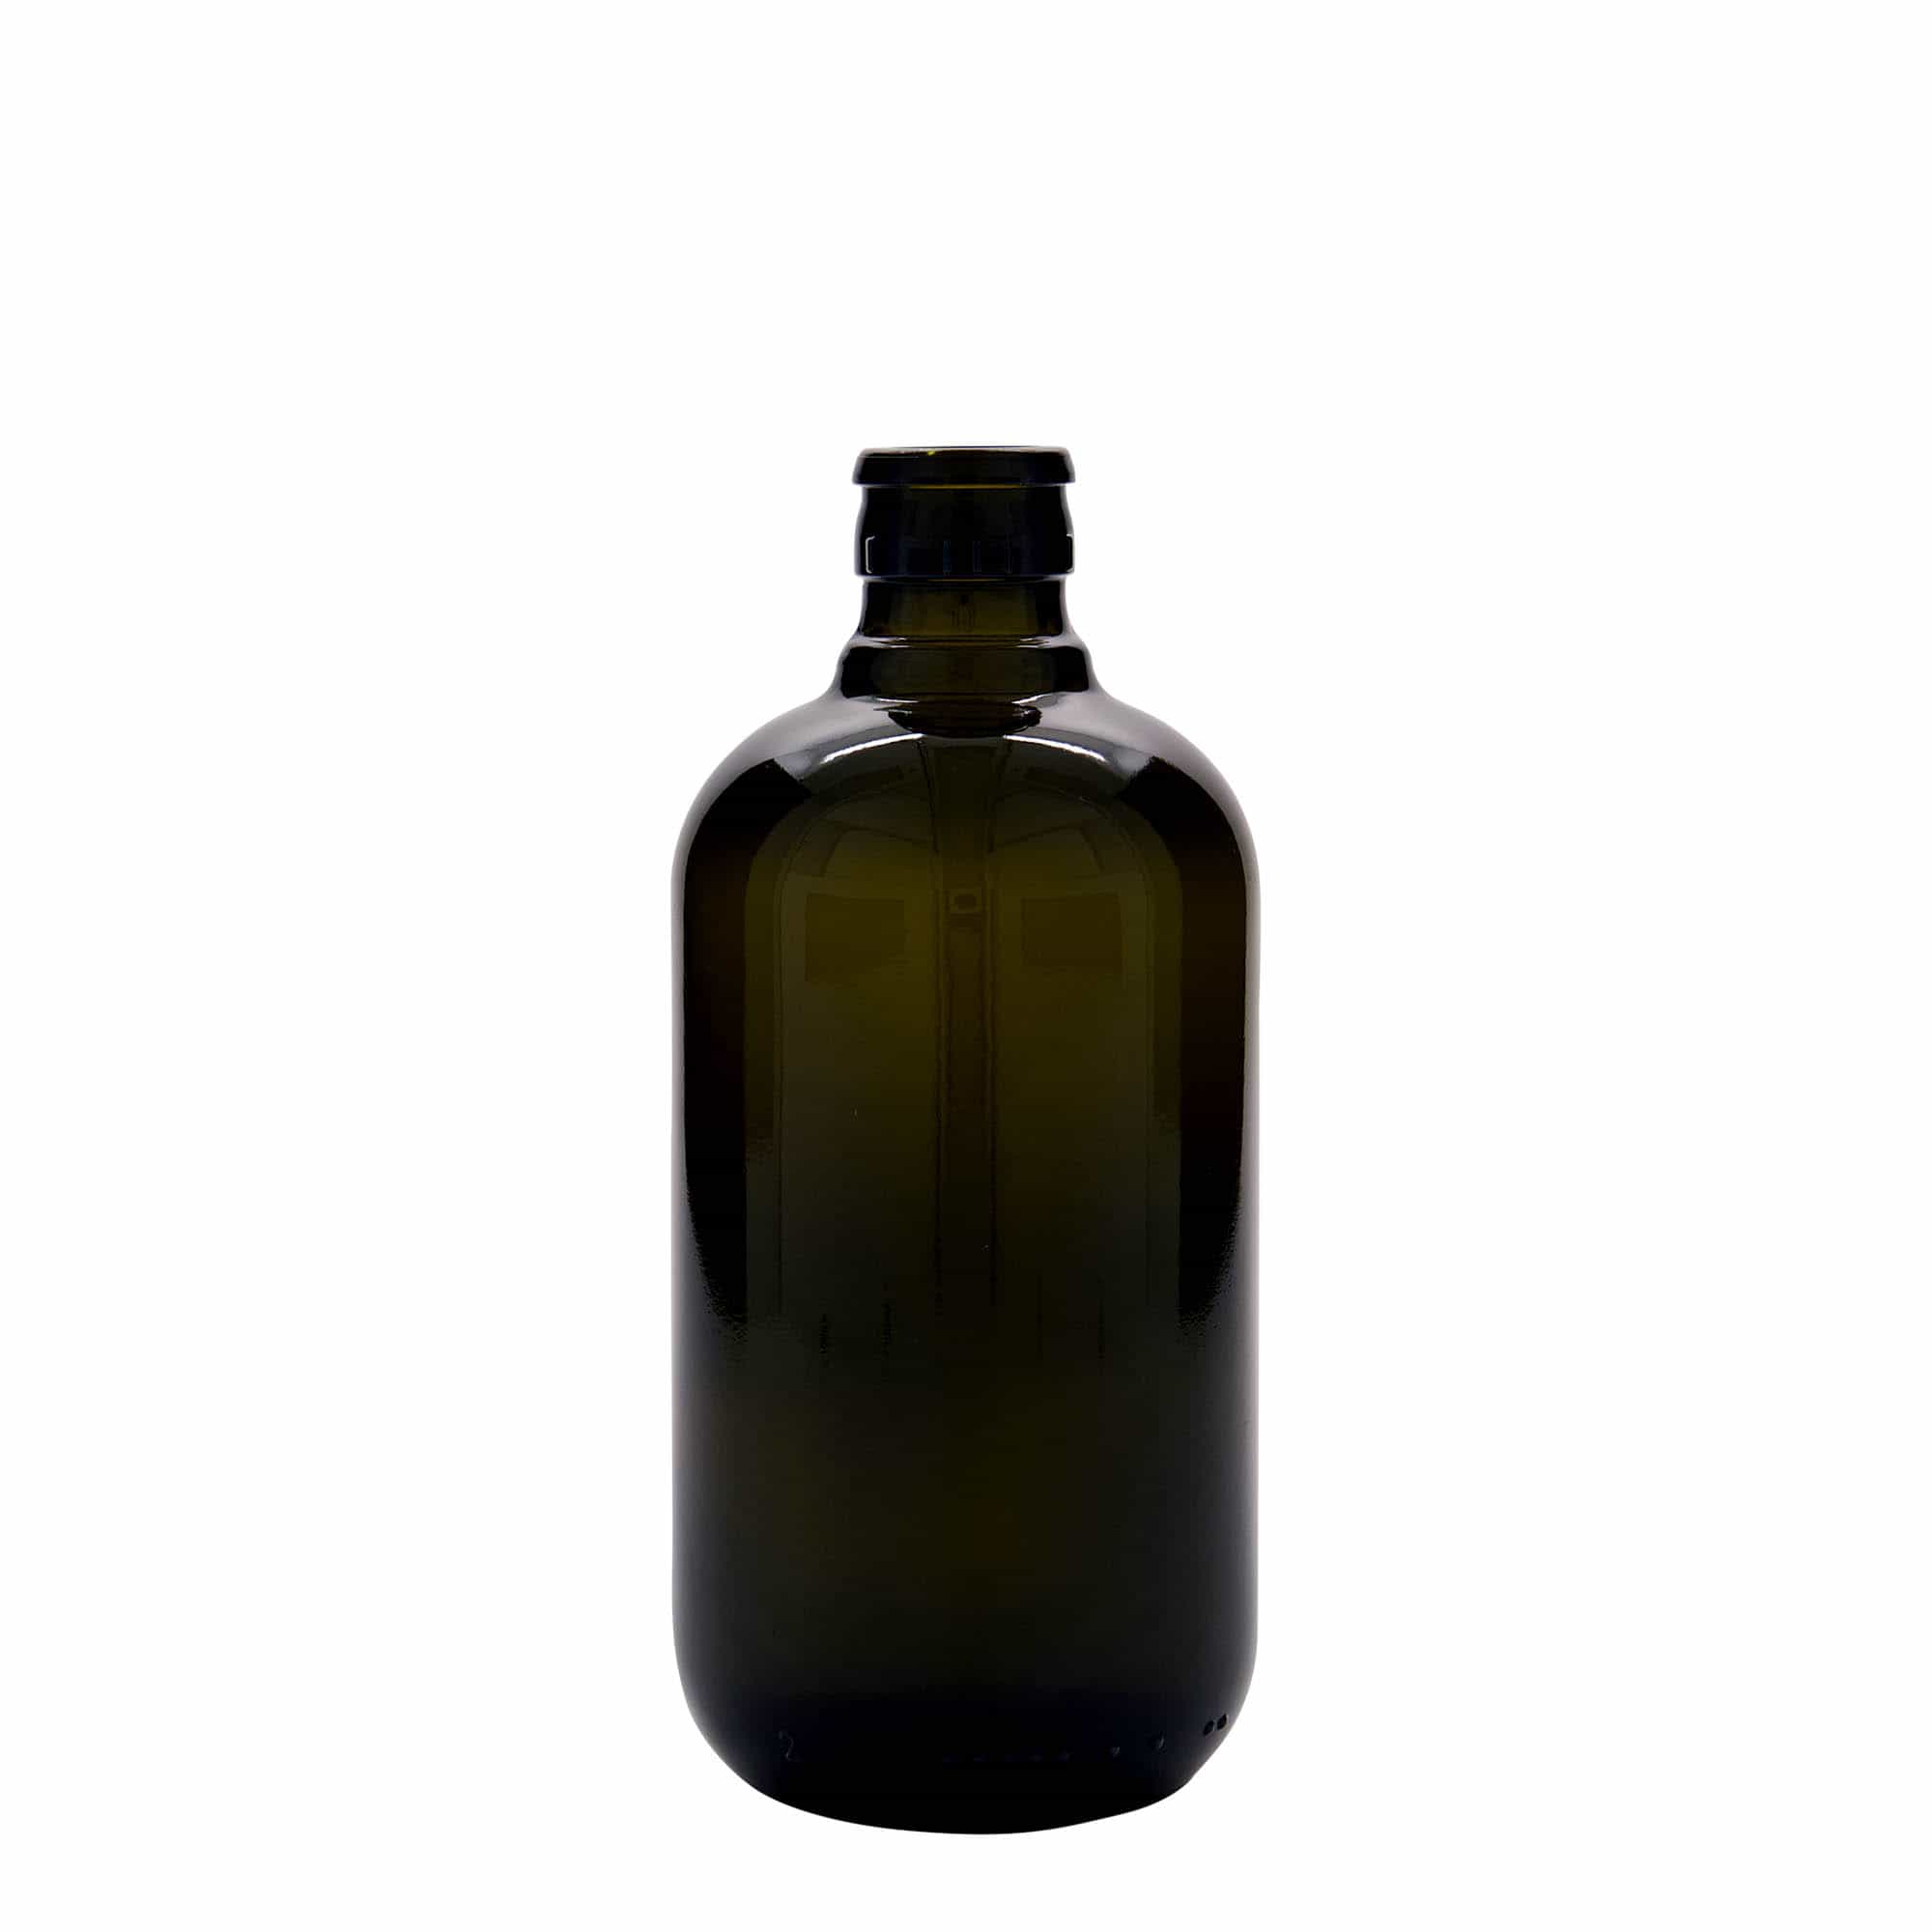 Azijn-/oliefles 'Biolio', 500 ml, glas, antiekgroen, monding: DOP